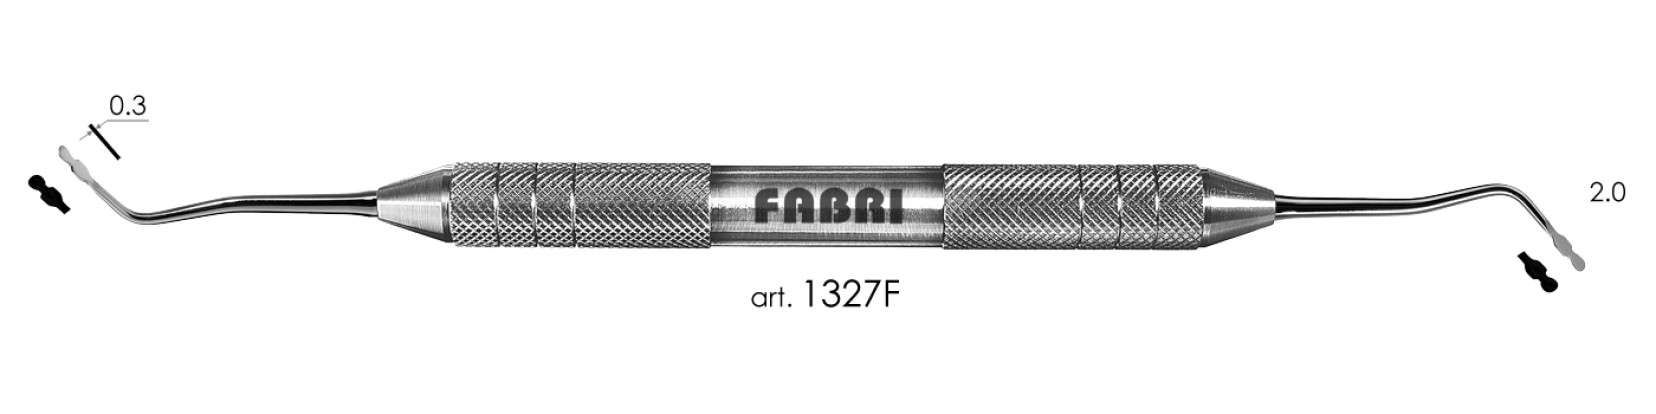 ФАБРИ Fabri  - Инструмент для укладки ретракционной нити с канавкой (артикул 1327 F)